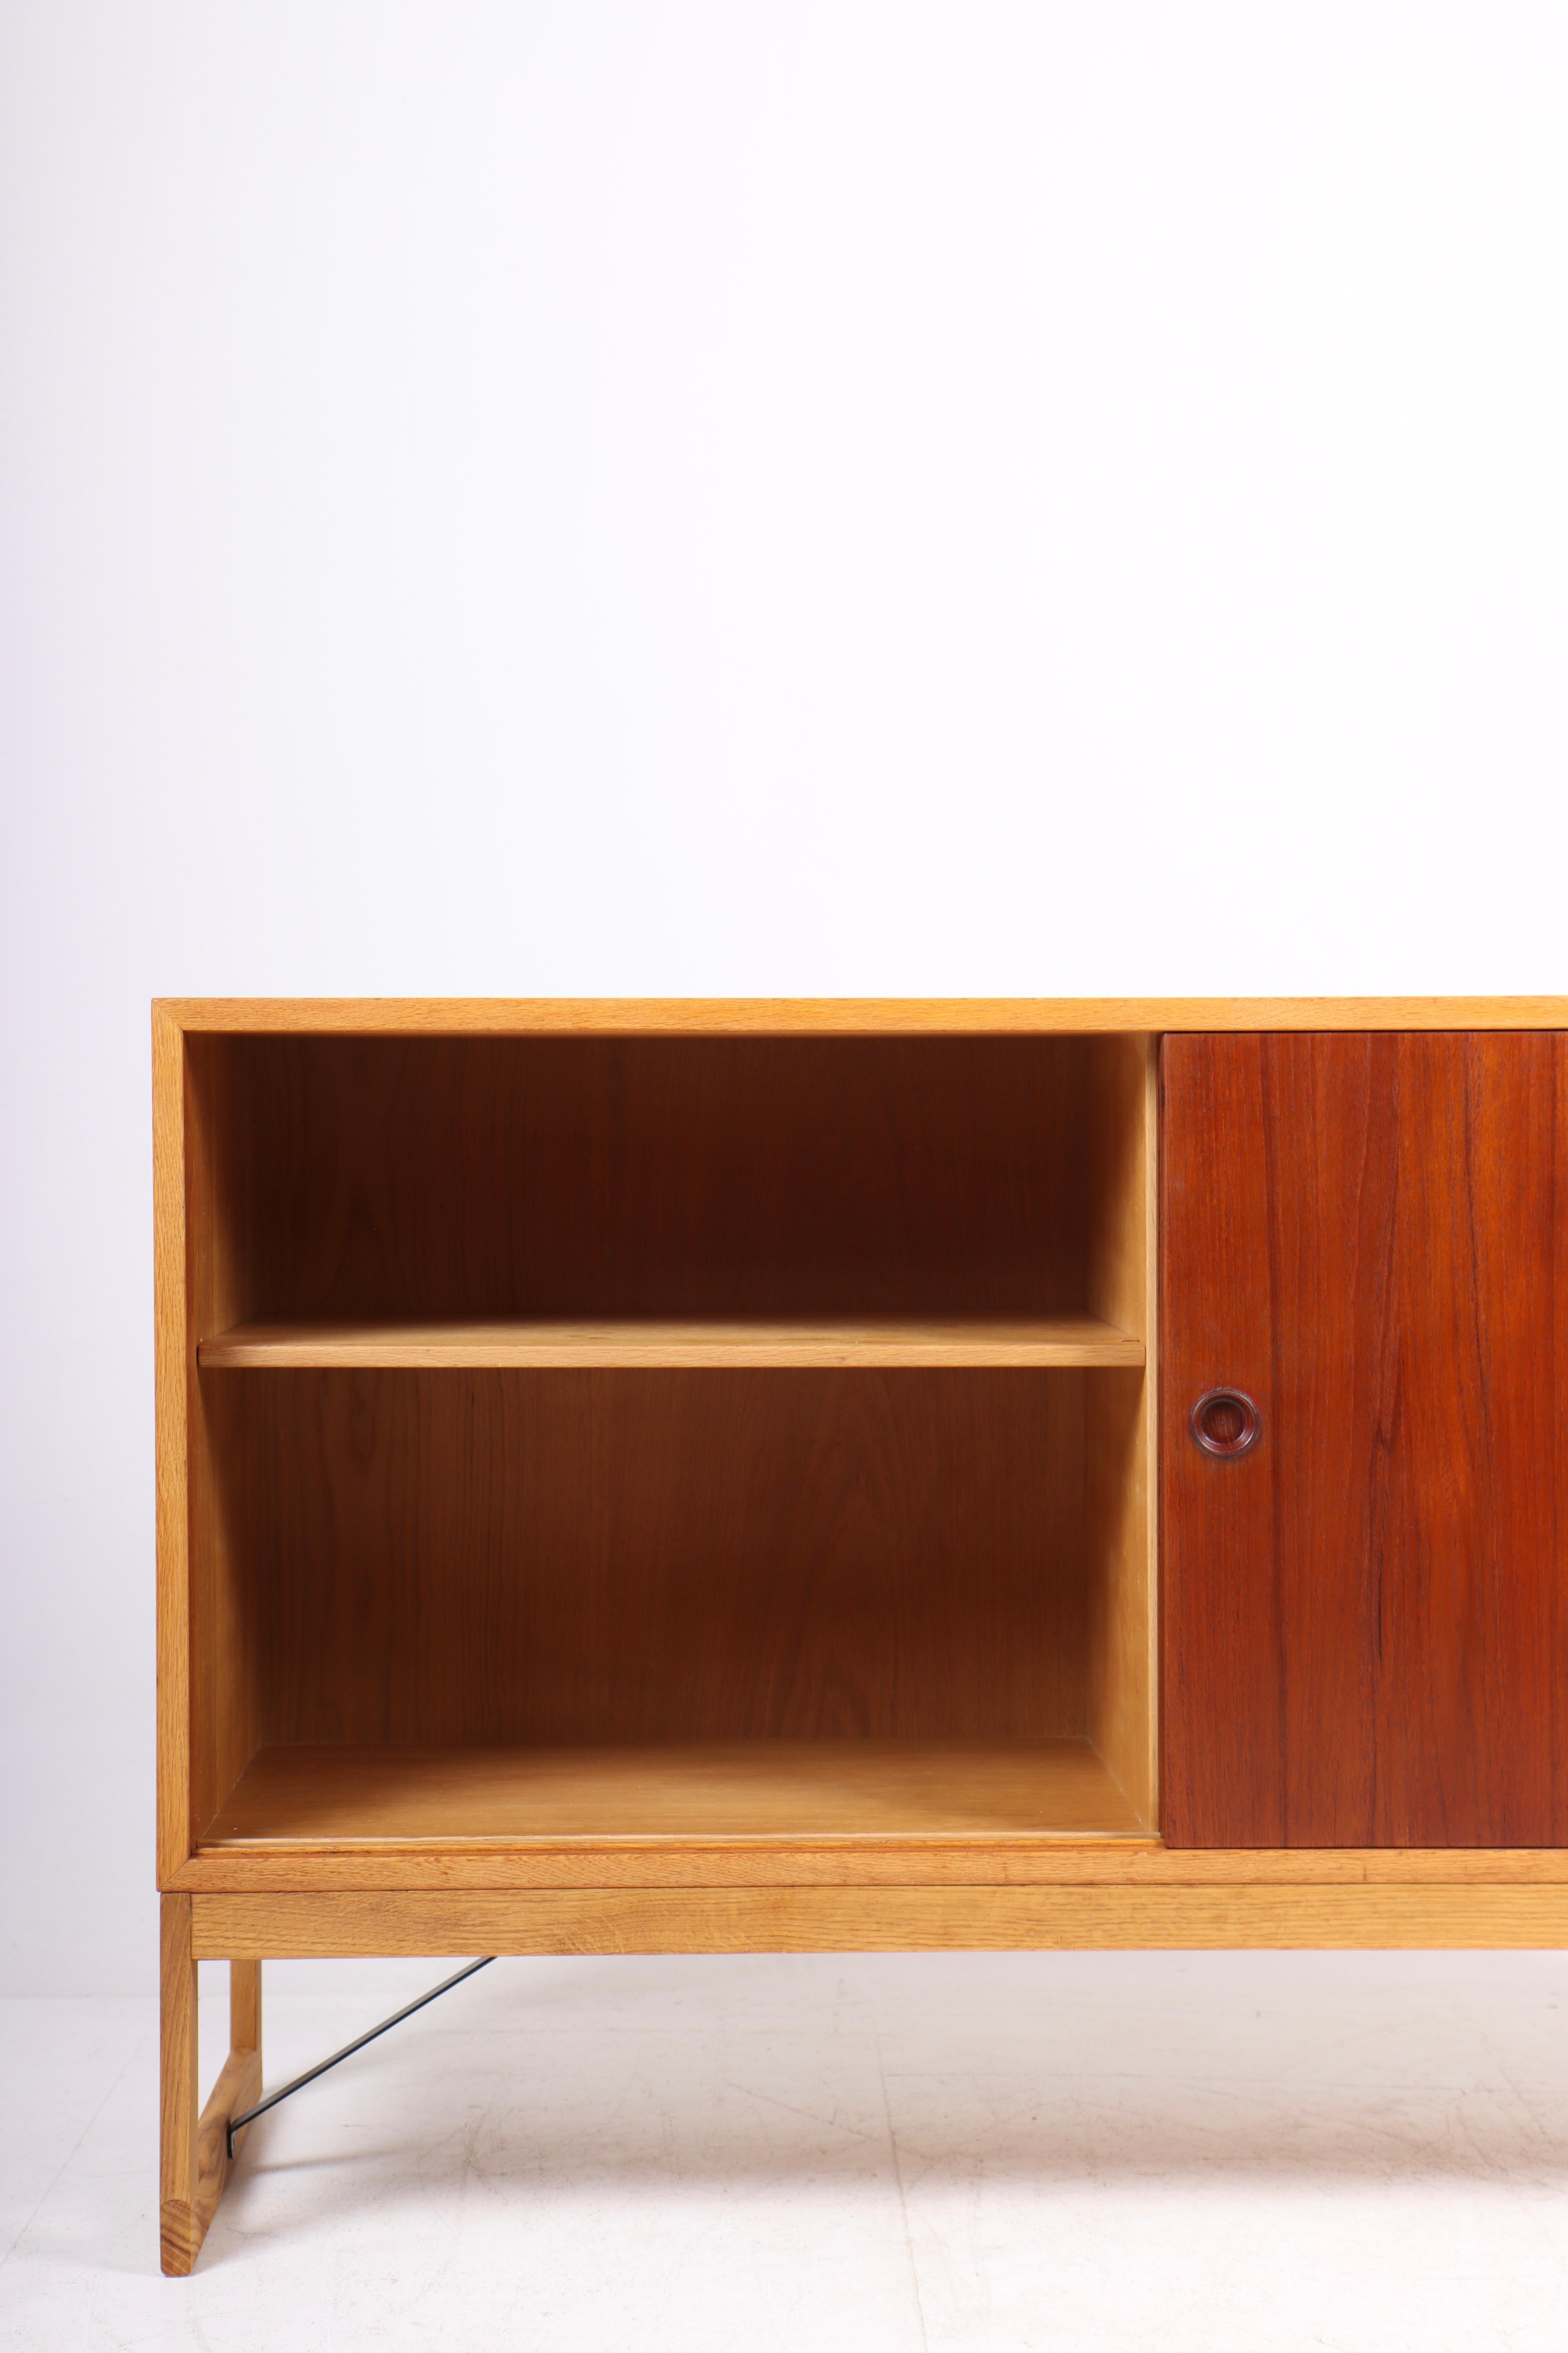 Scandinavian Modern Low Midcentury Cabinet in Oak and Teak by Børge Mogensen, 1960s For Sale